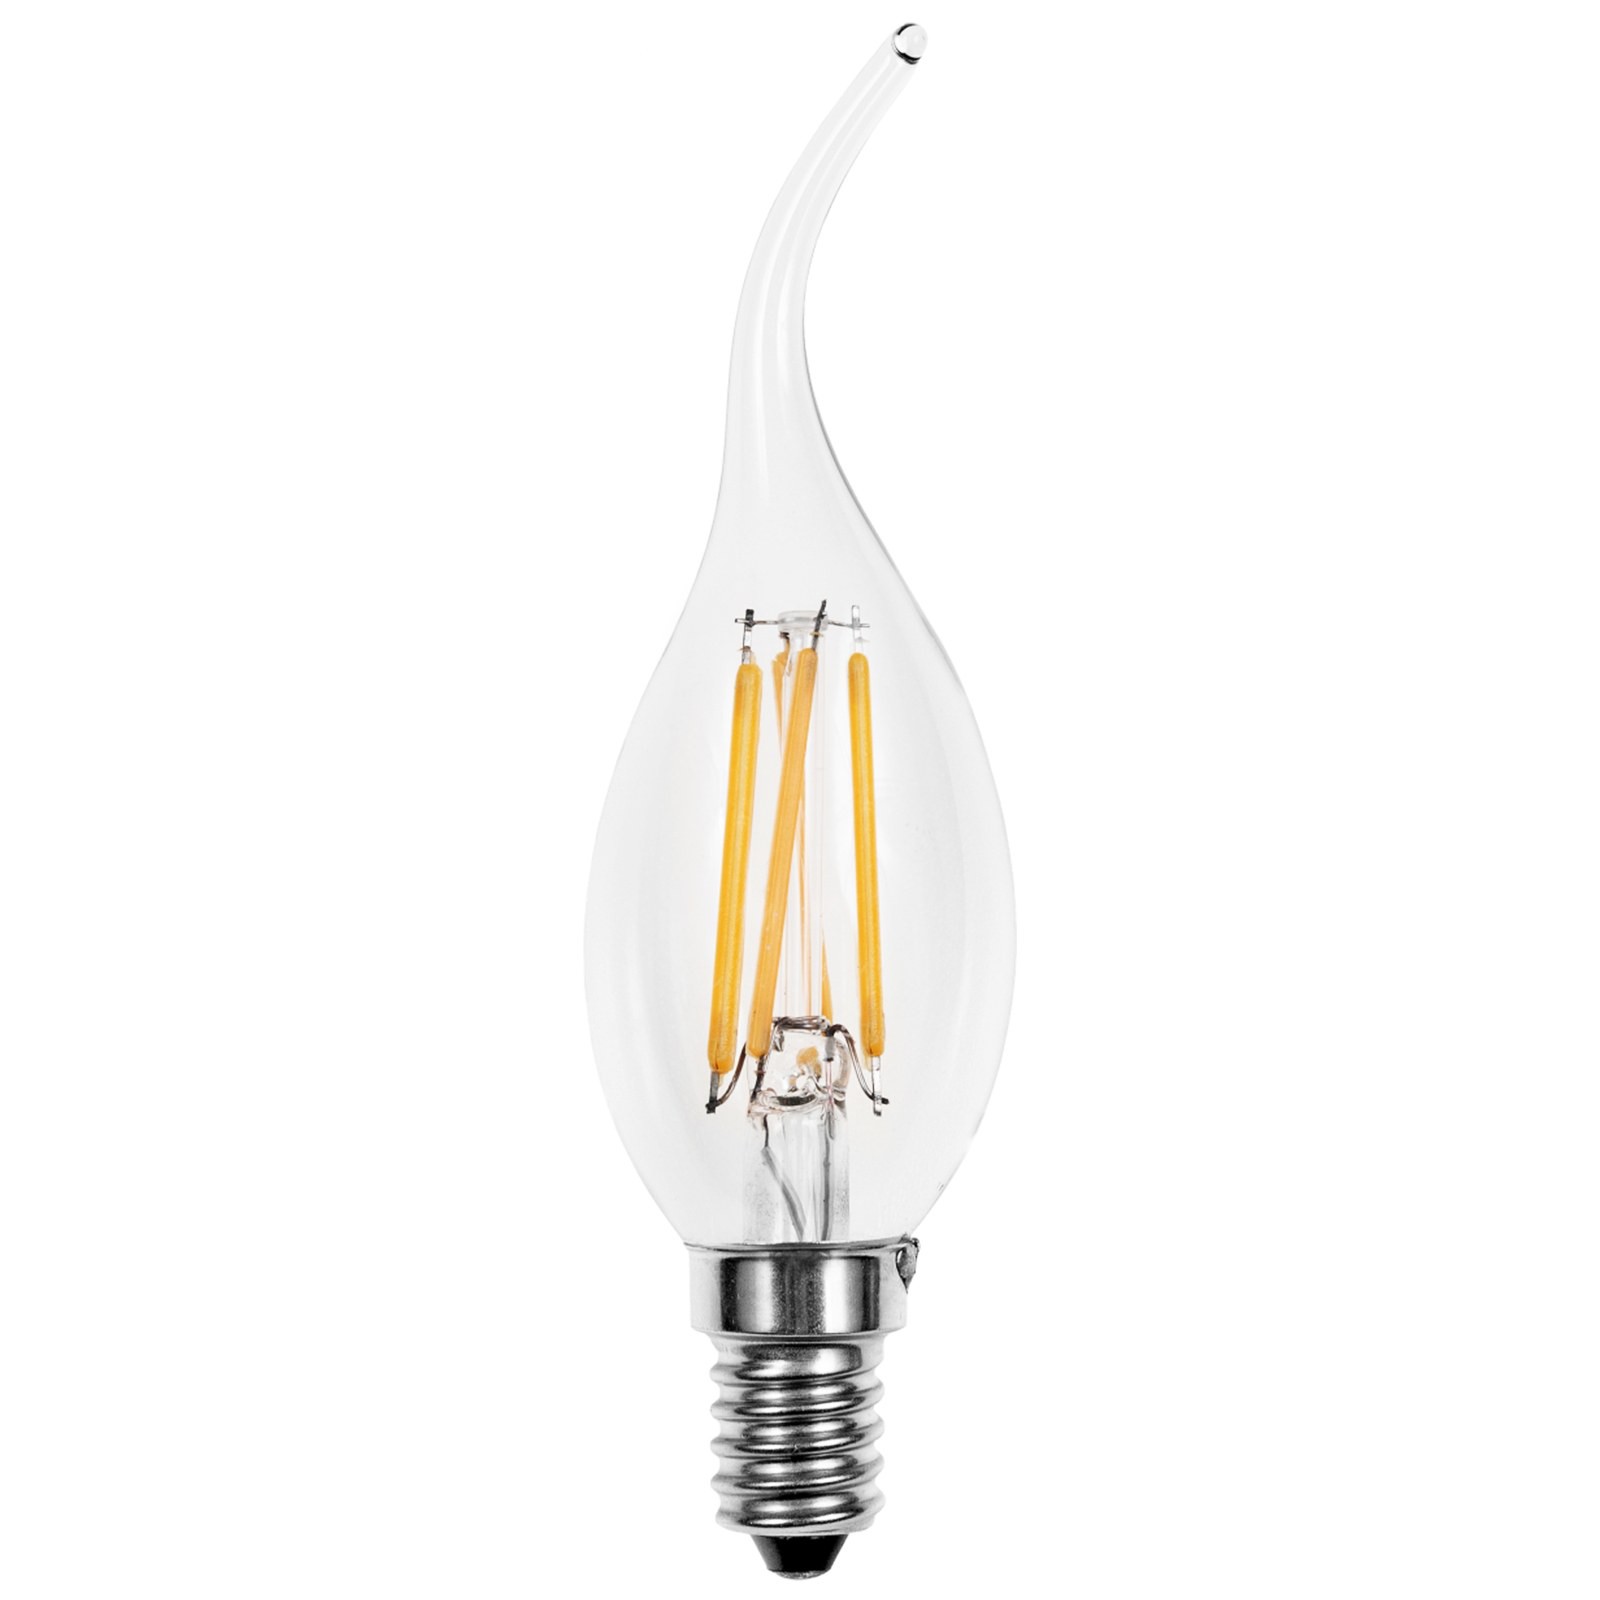 Lampada led lampadina filamento attacco e14 light a for Lampada led 50 watt